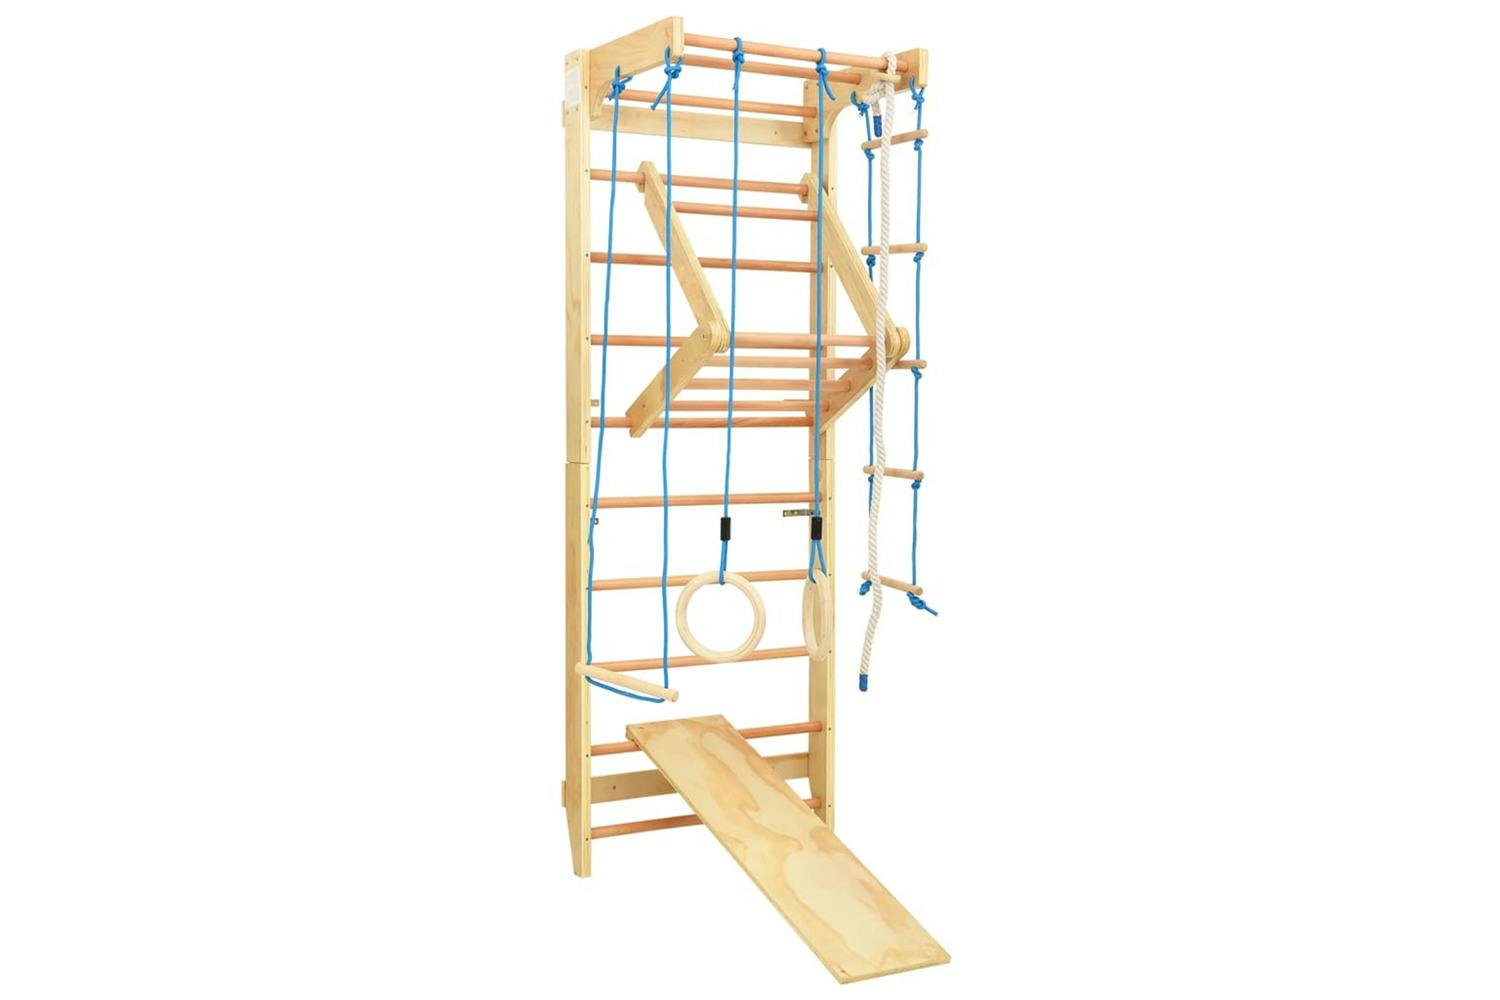 Vidaxl 92335 Indoor Climbing Playset With Ladders Rings Slide Wood